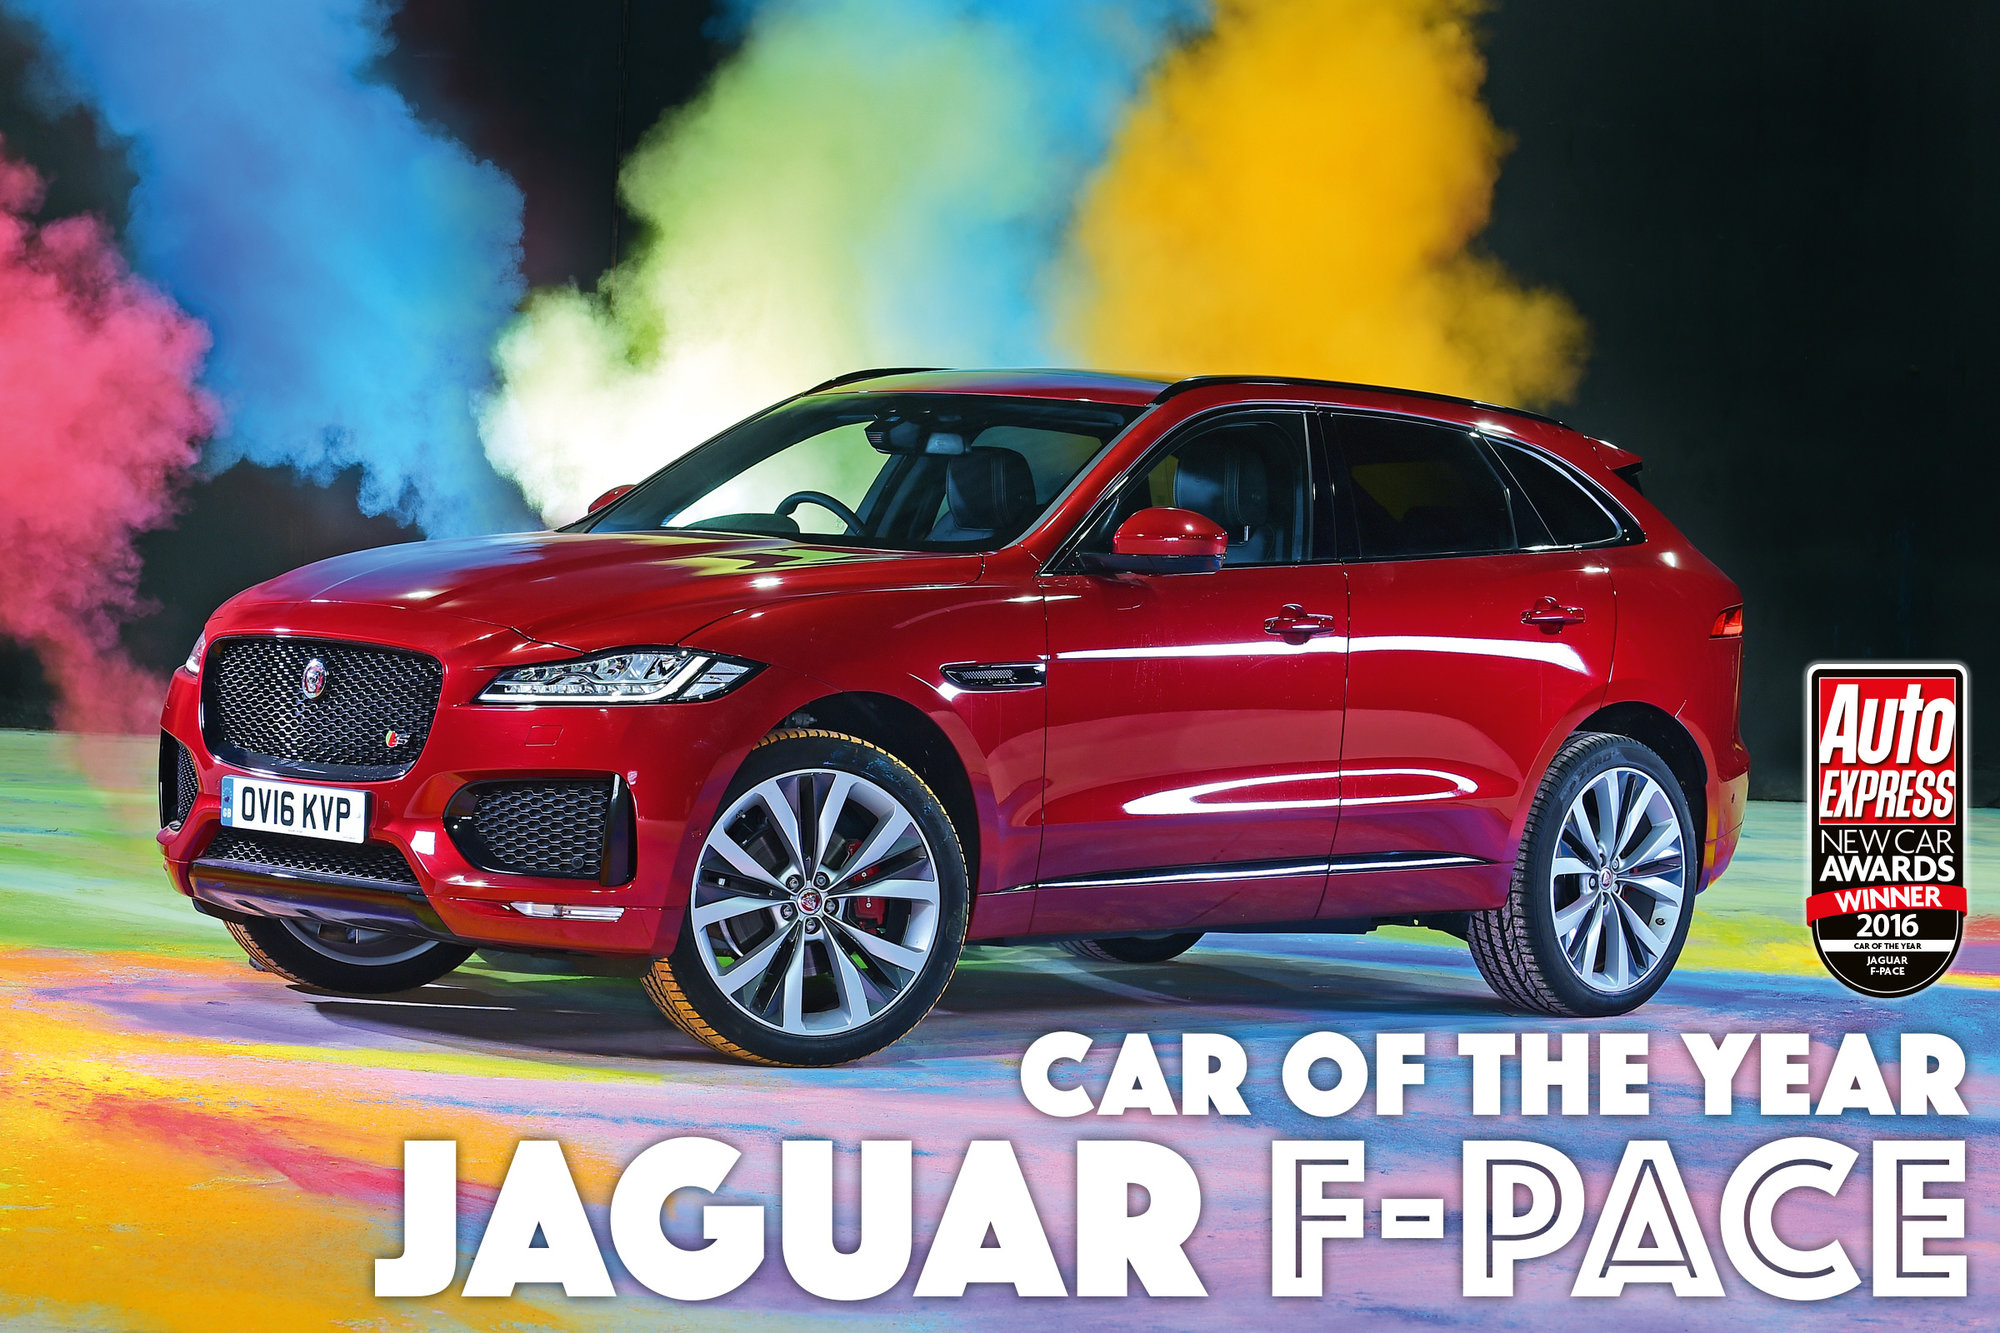 Nejlepší auto roku podle magazínu Auto Express - Jaguar F-Pace.